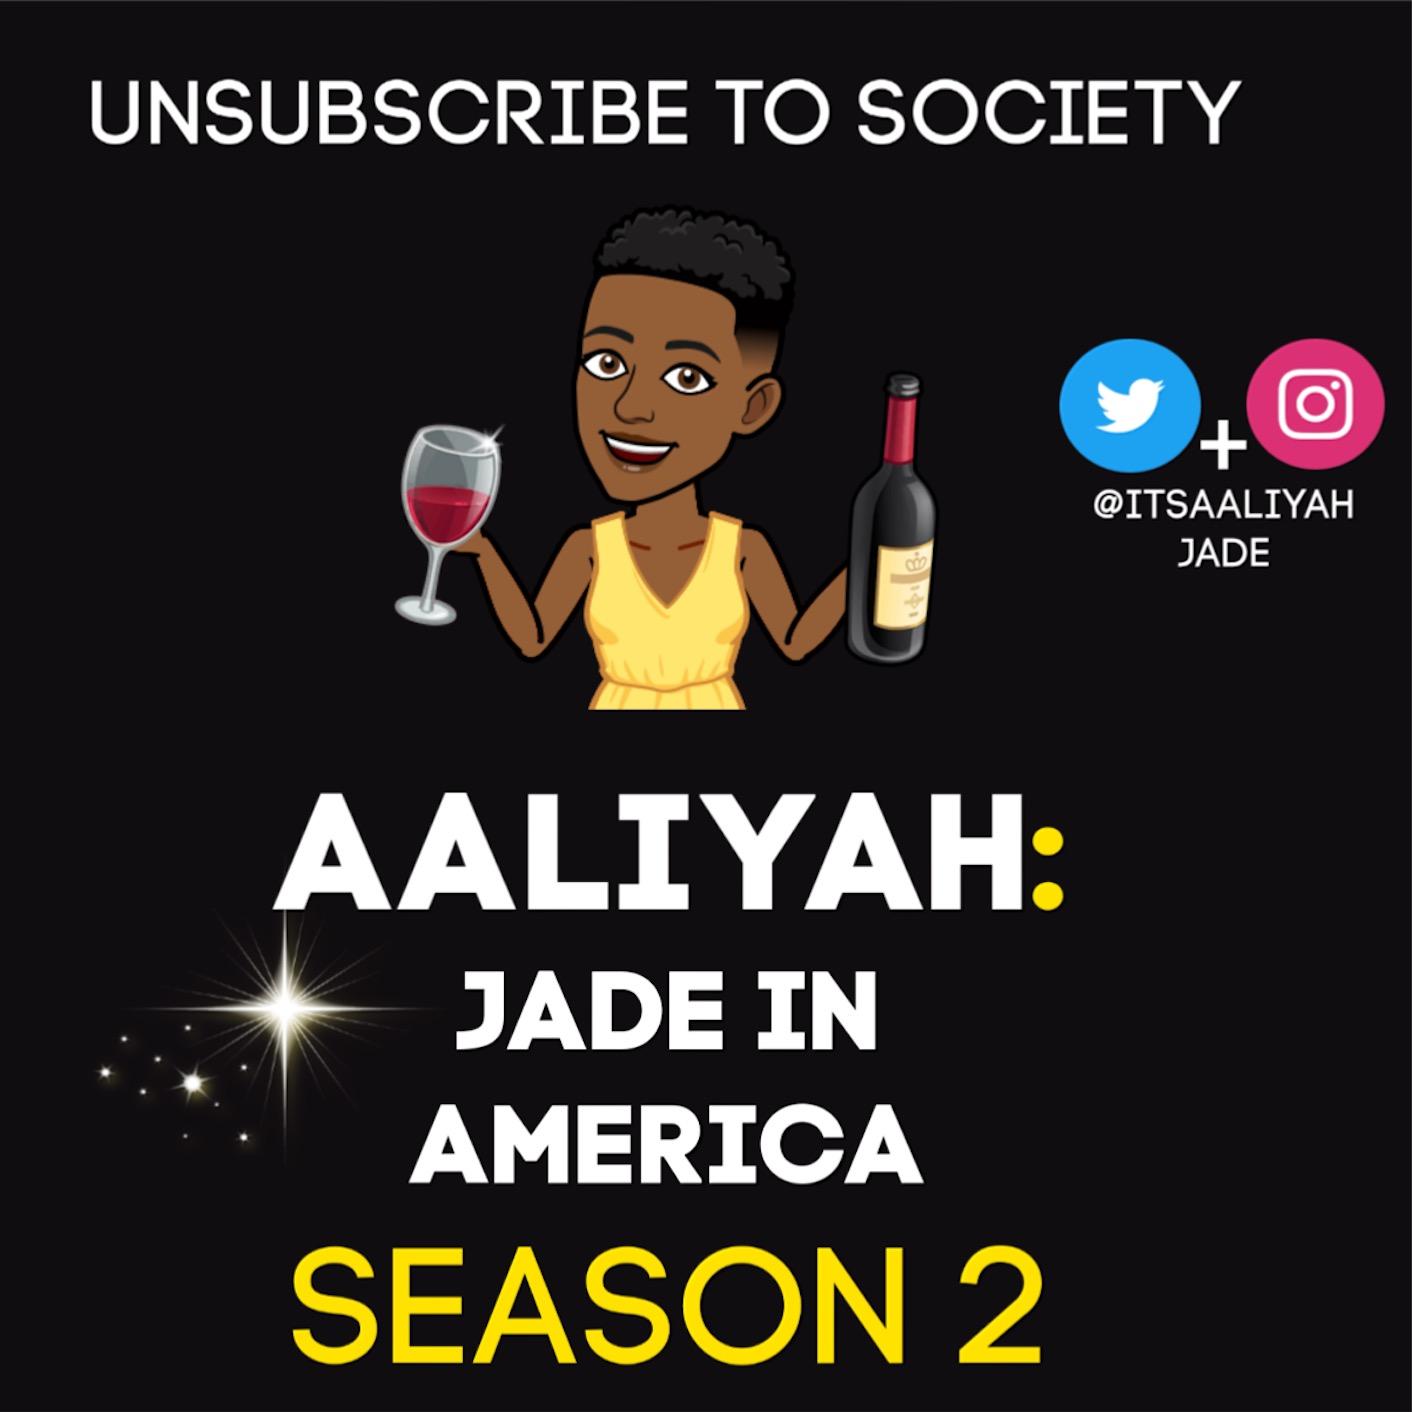 Aaliyah: Jade in America